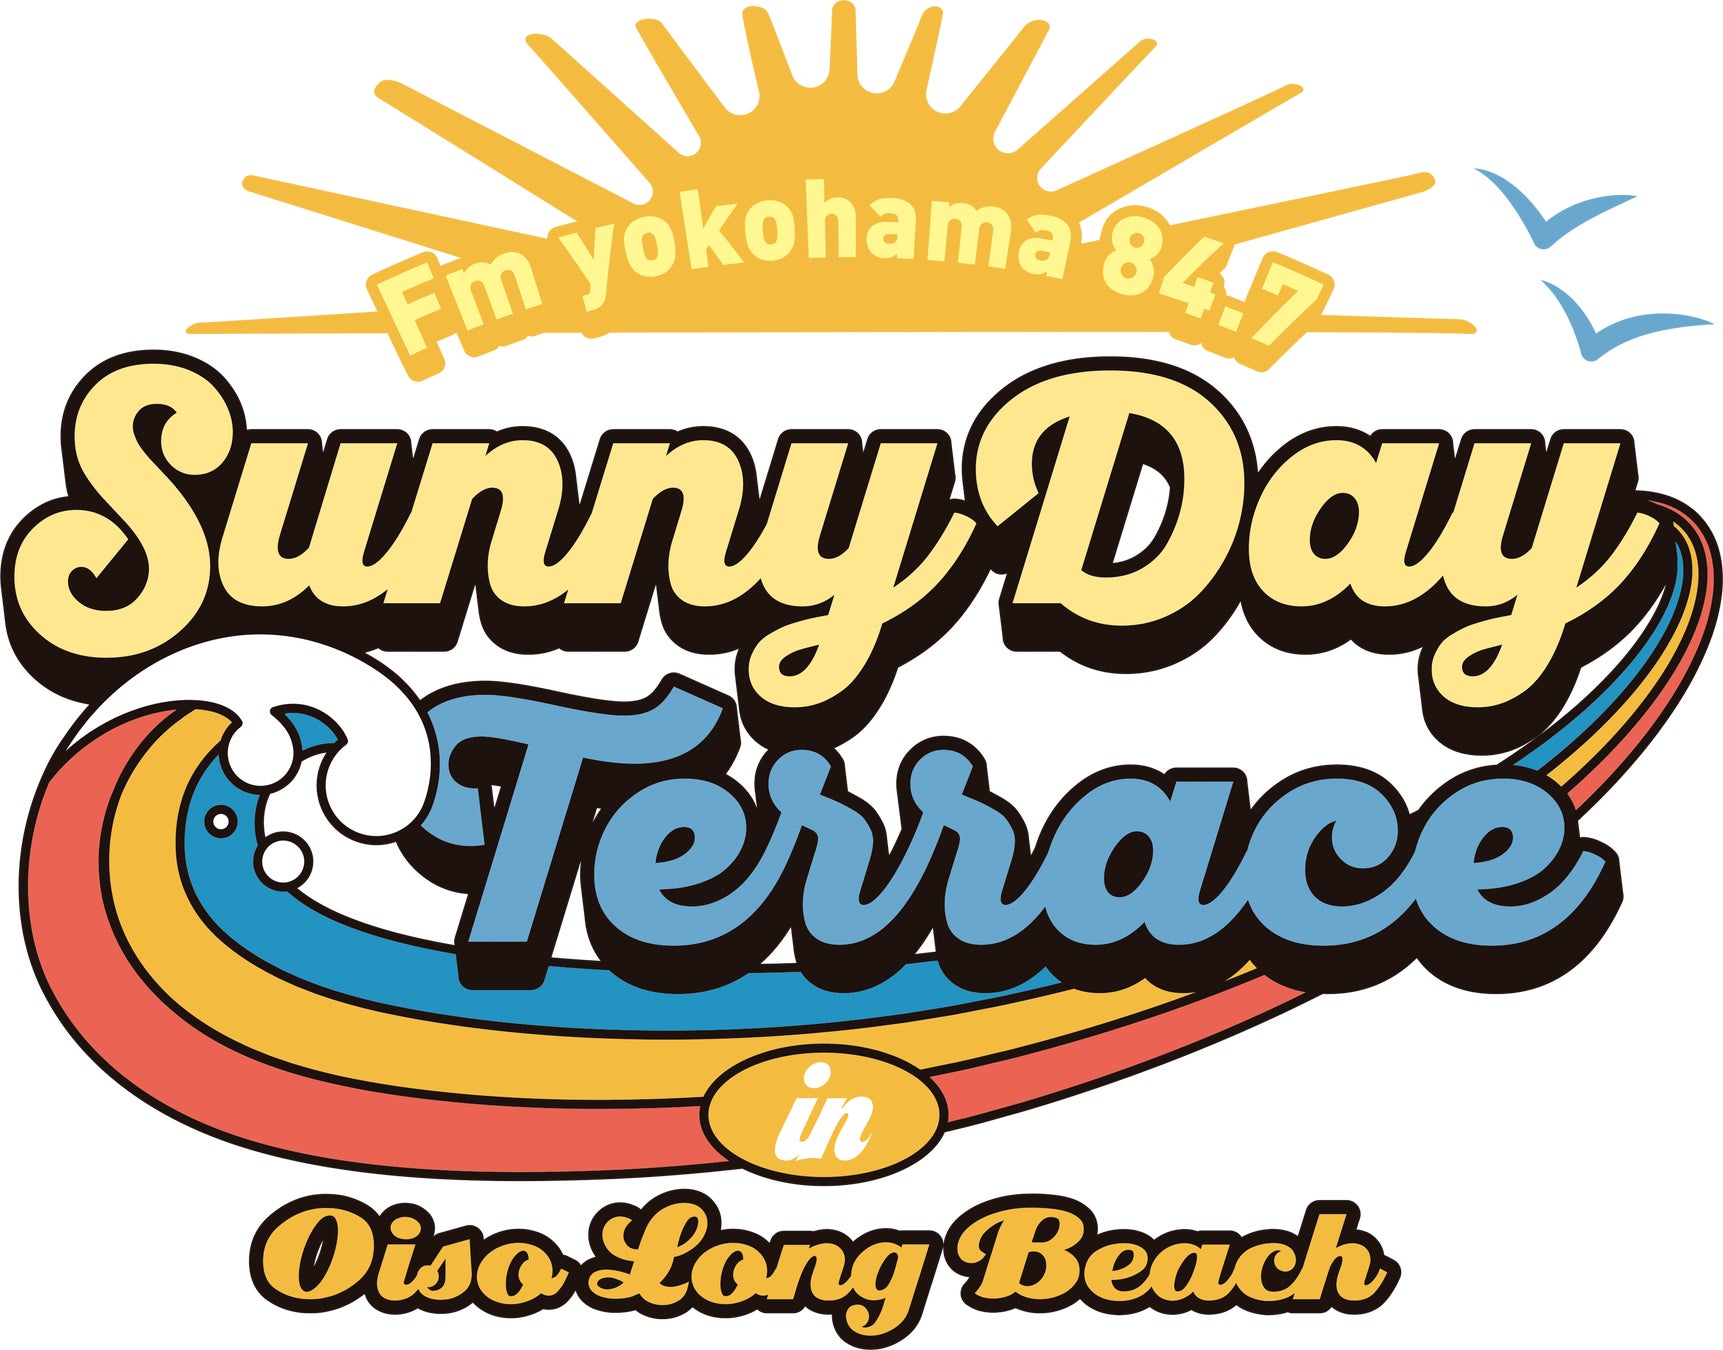 Fm yokohama84.7  Sunny Day Terrace ロゴイメージ